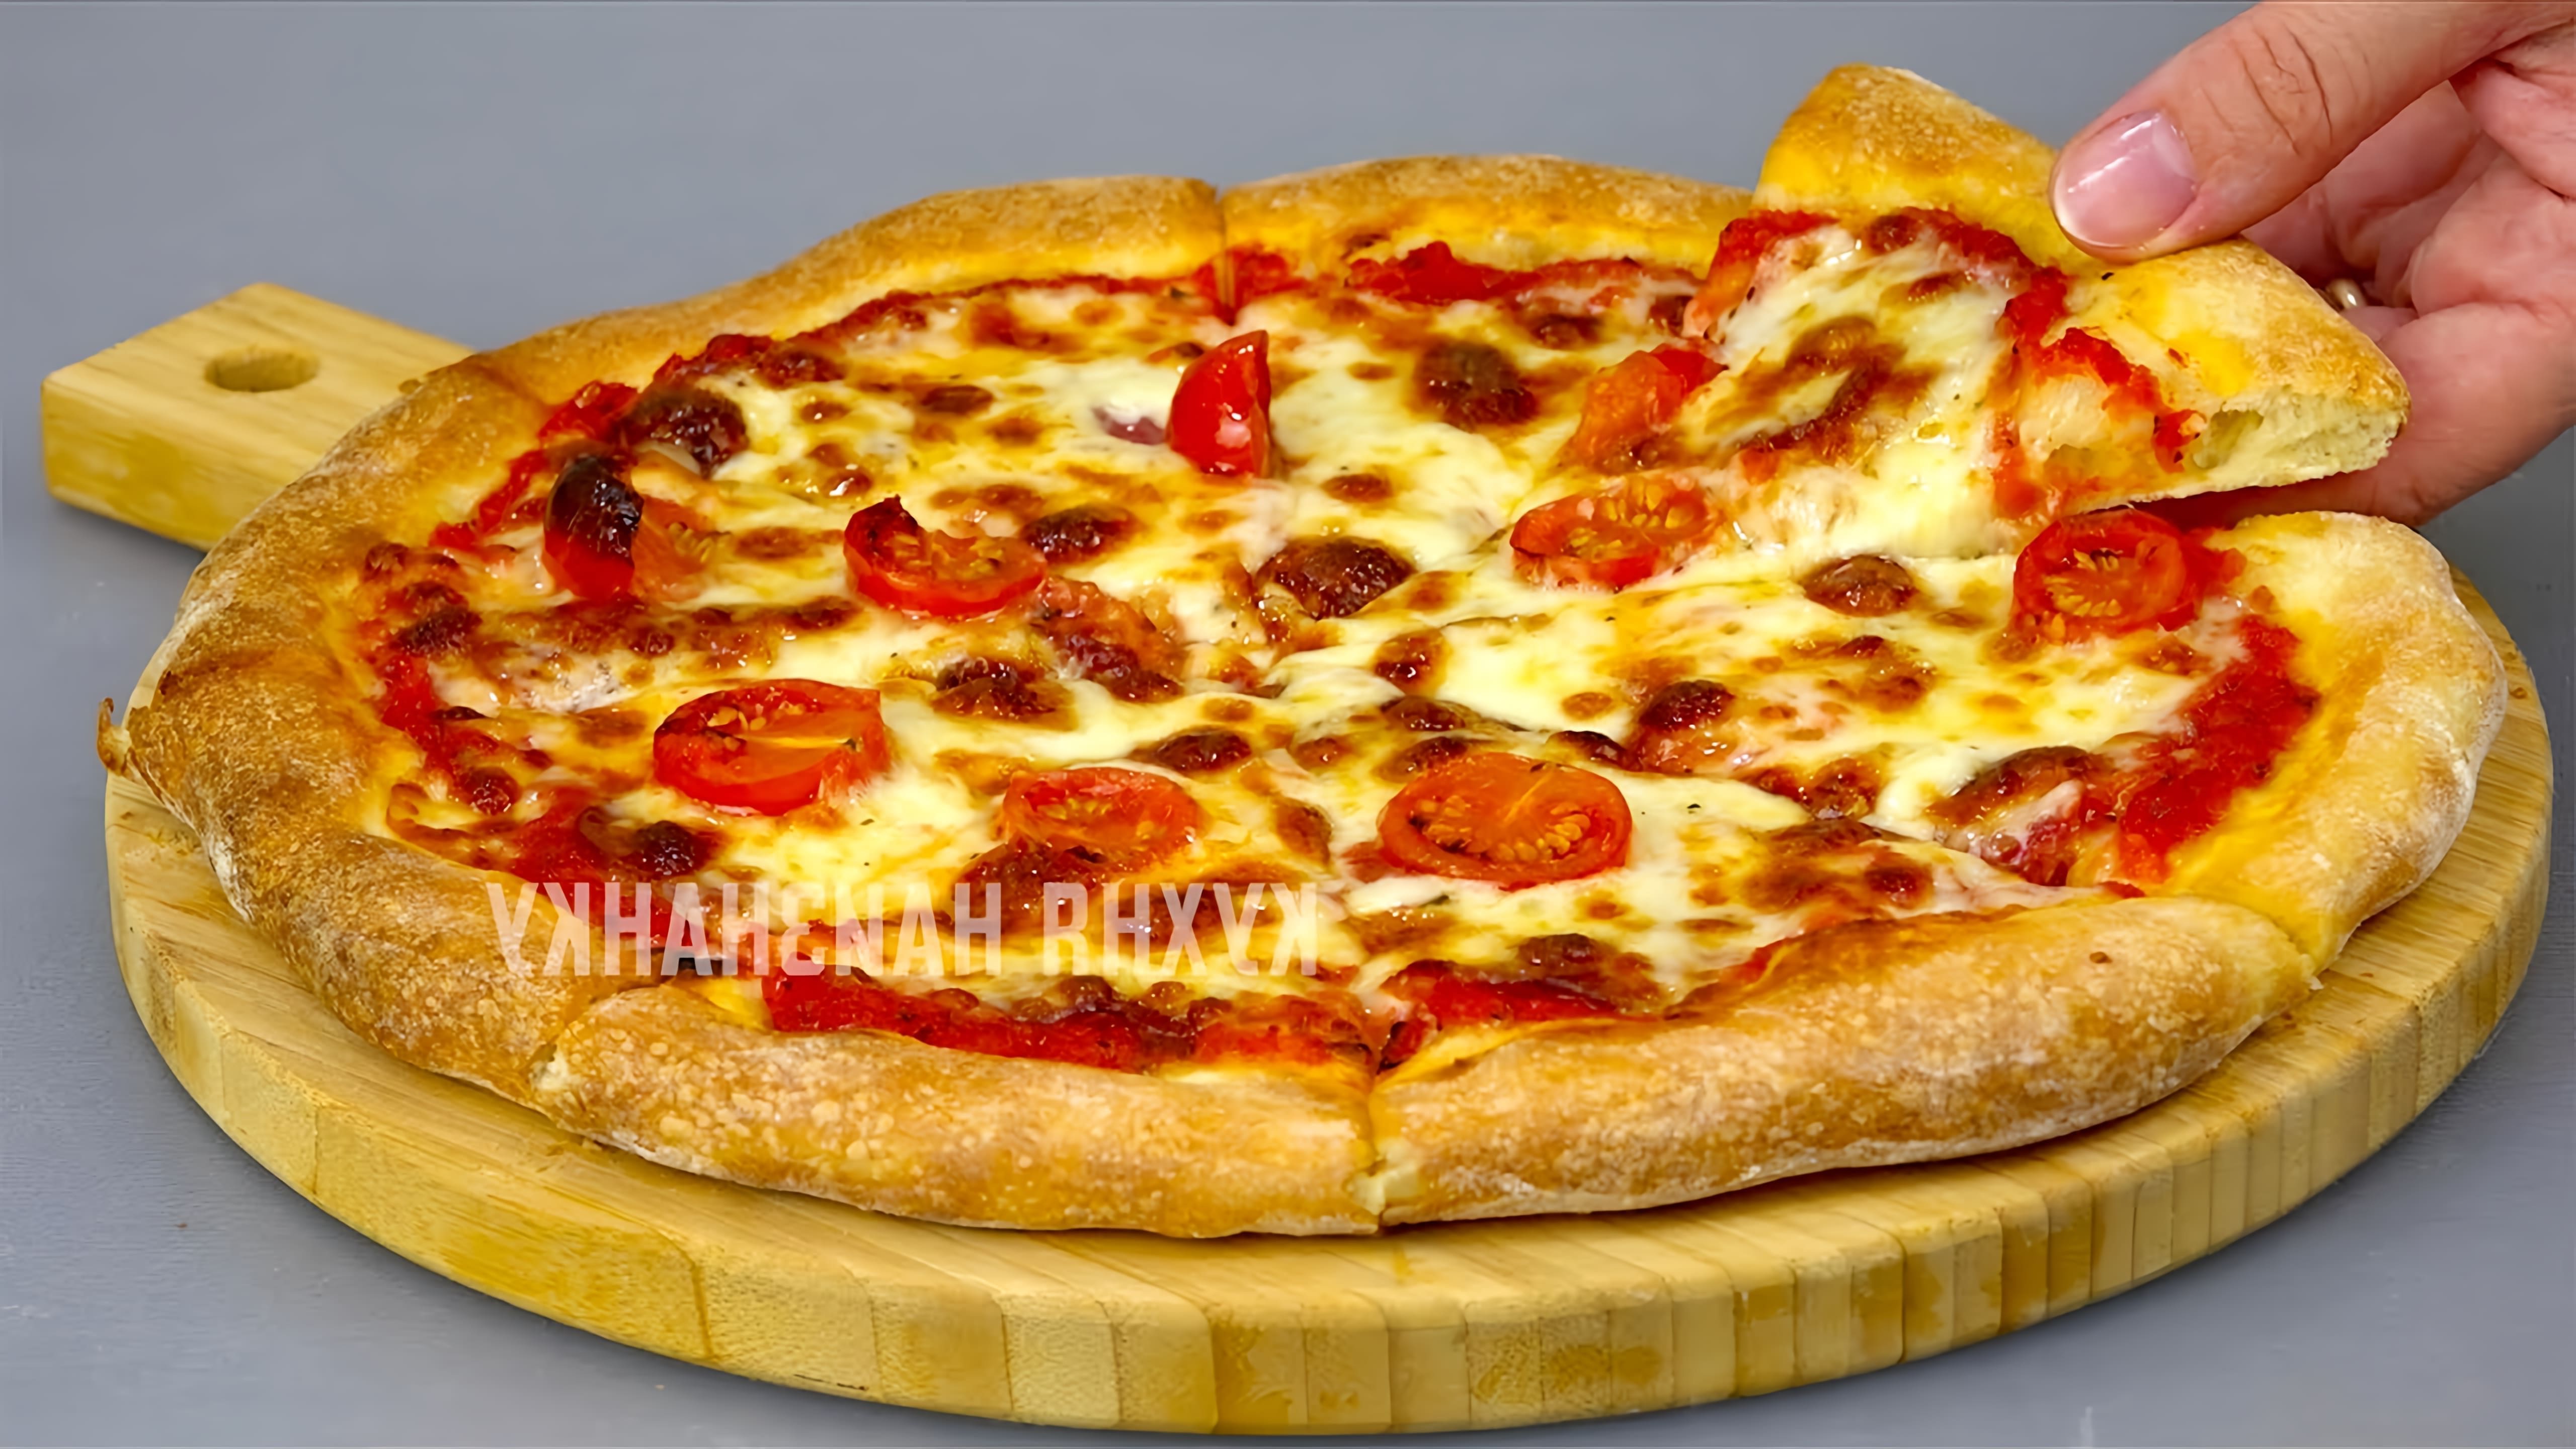 В этом видео показаны три рецепта приготовления теста для пиццы